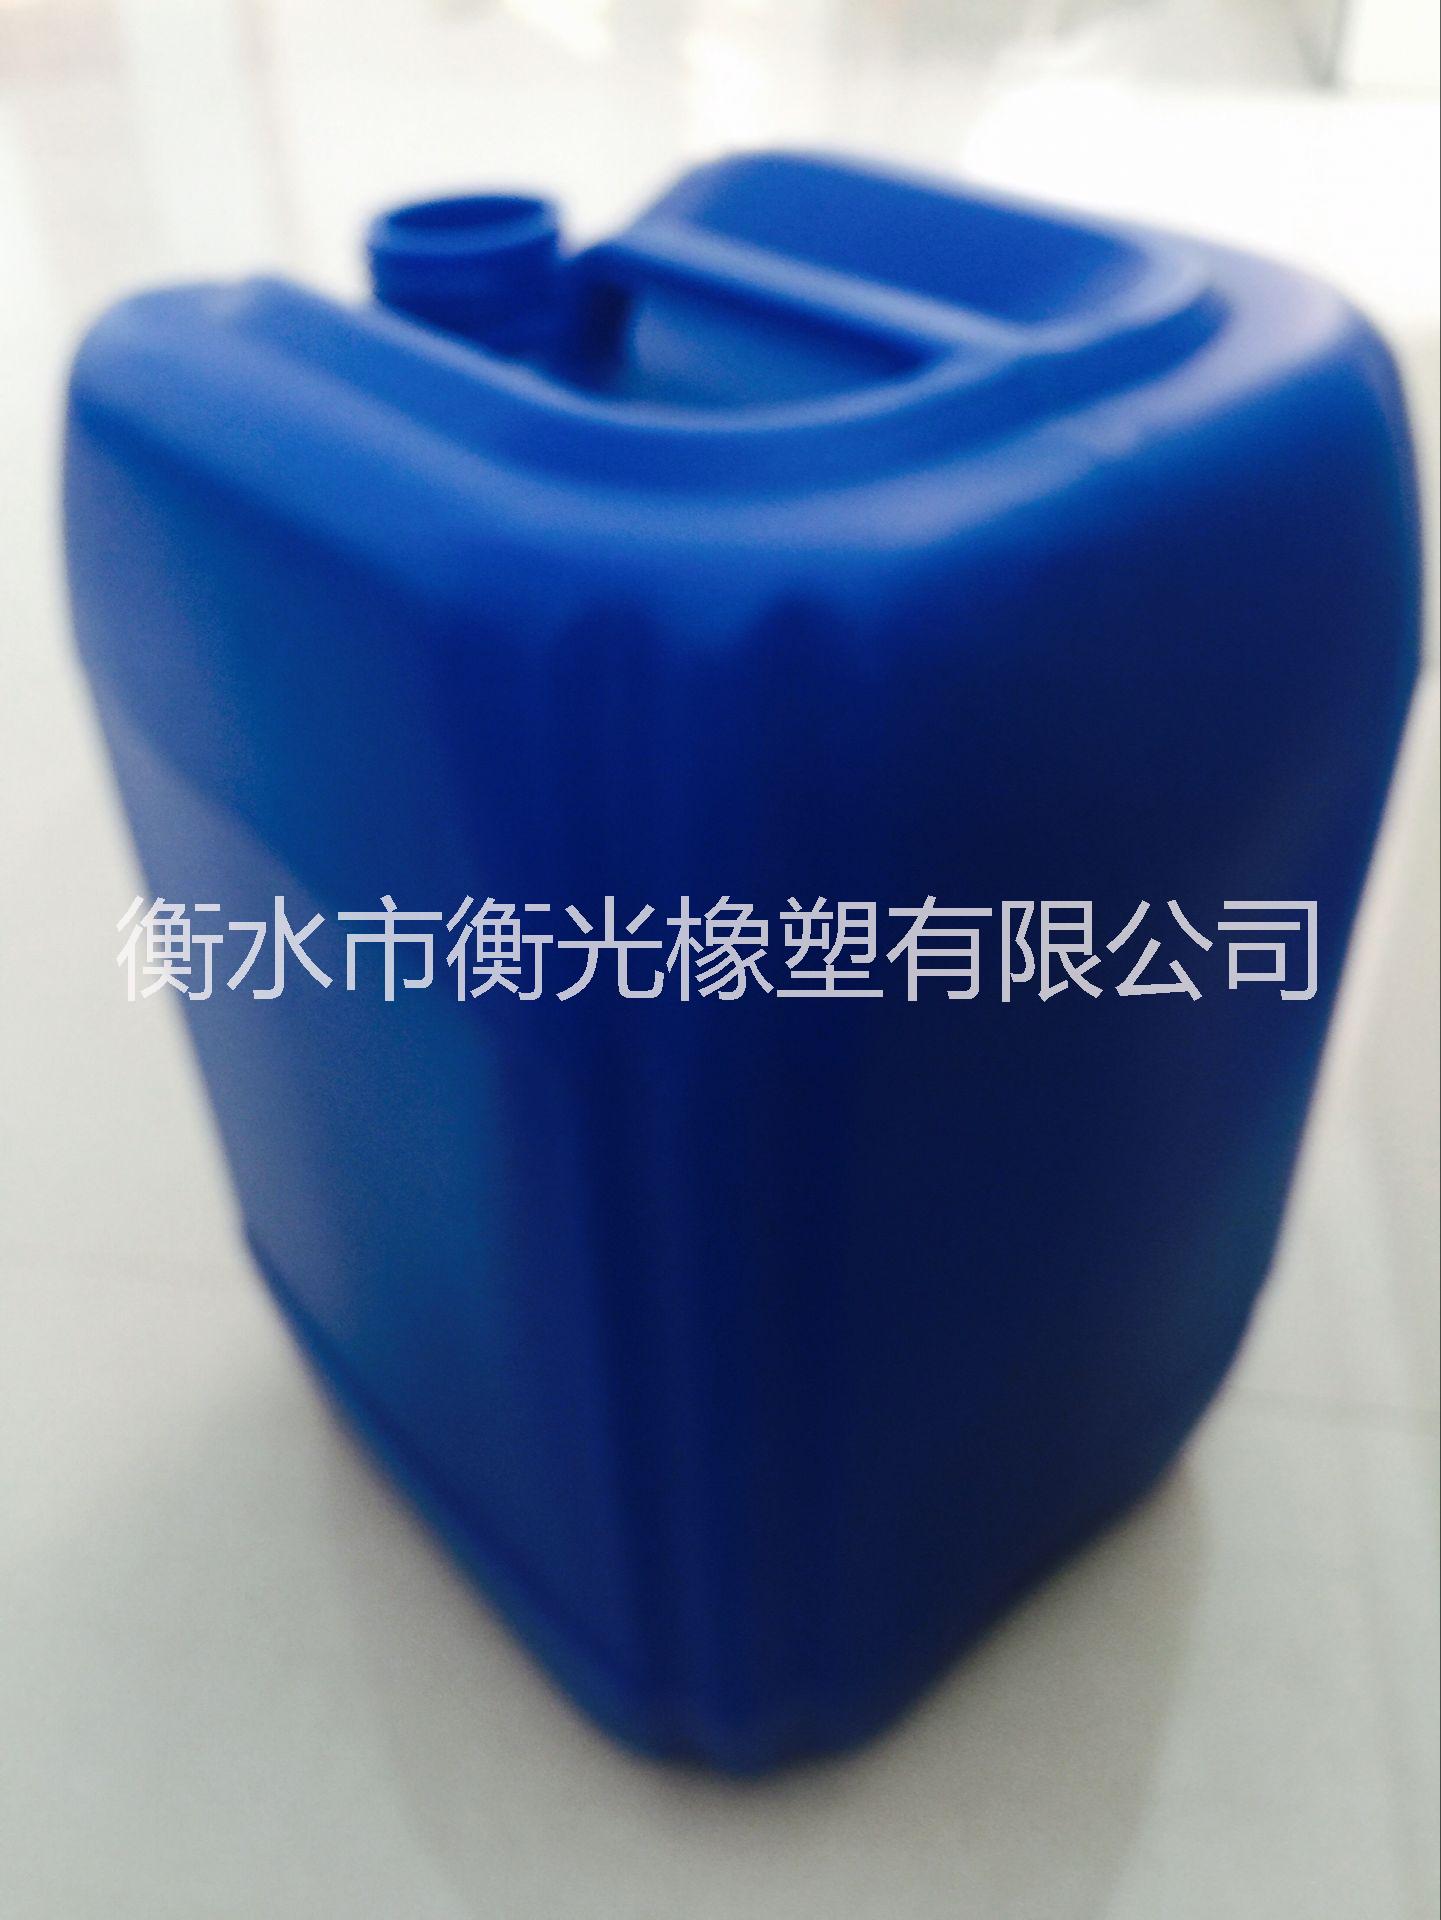 供应25l塑料桶化工桶化工桶生产厂家图片